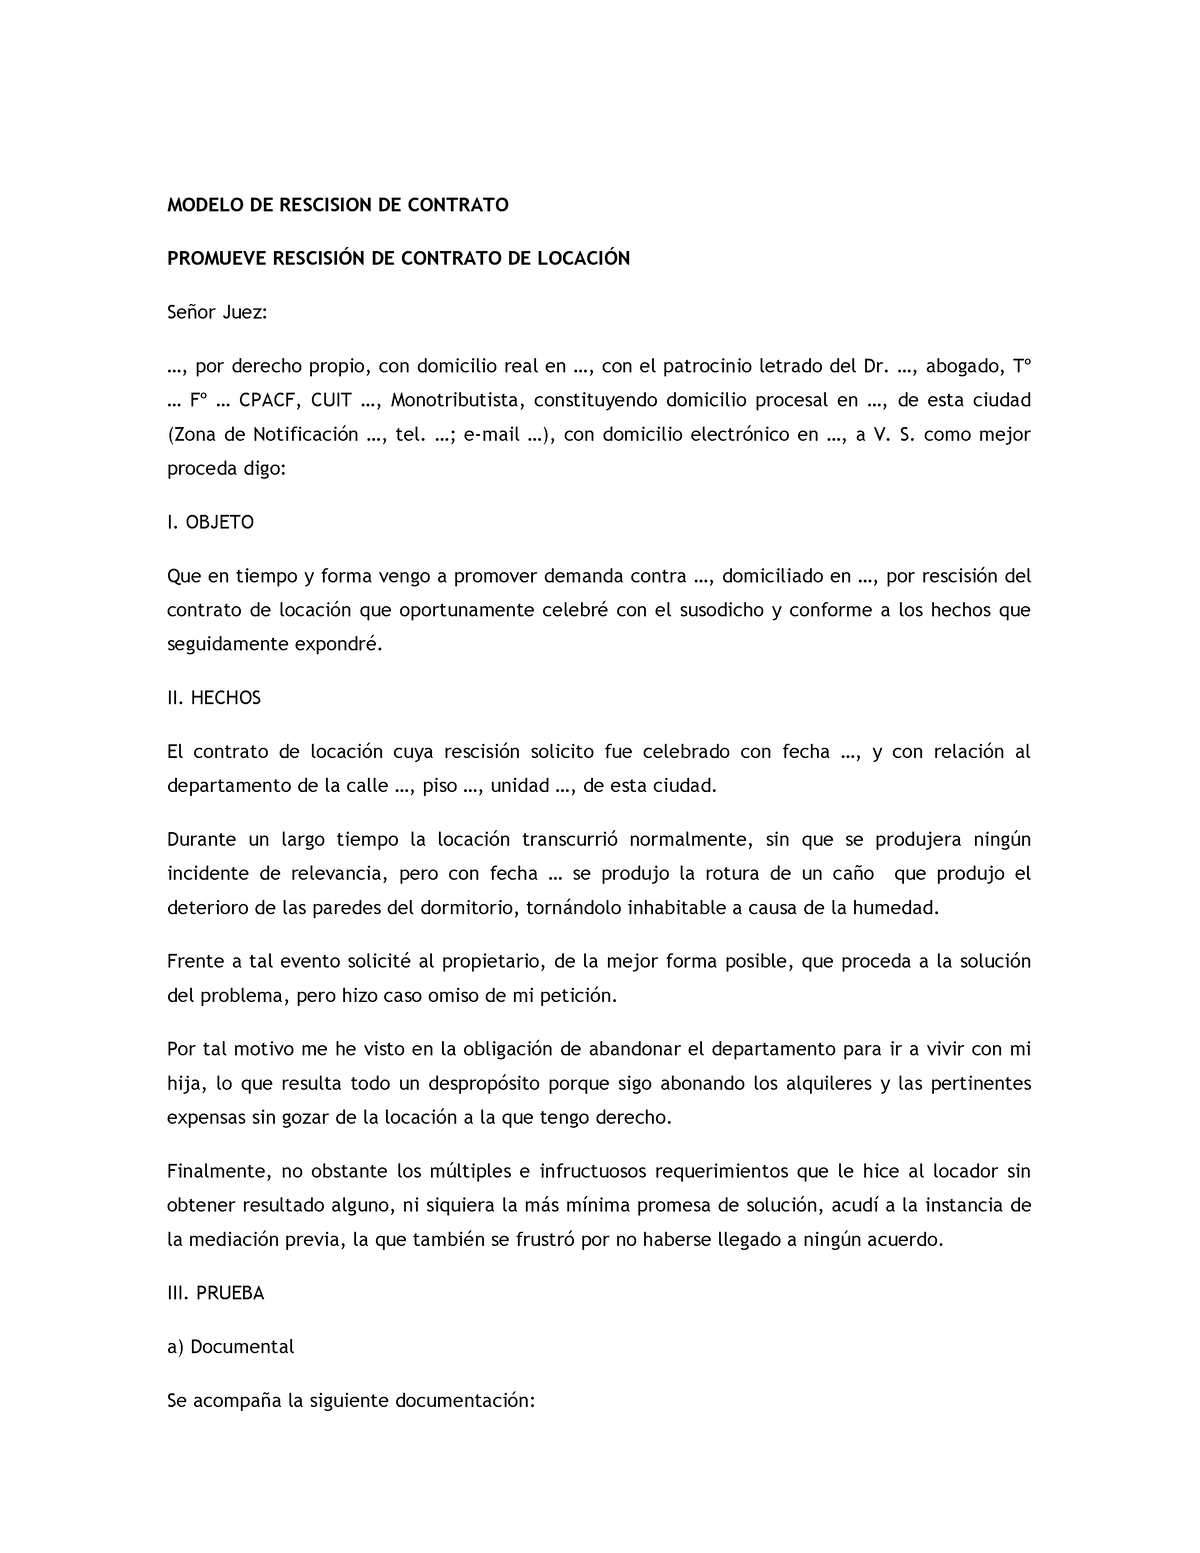 Modelo De Rescision De Contrato Modelo De Rescision De Contrato Promueve RescisiÓn De Contrato 3403